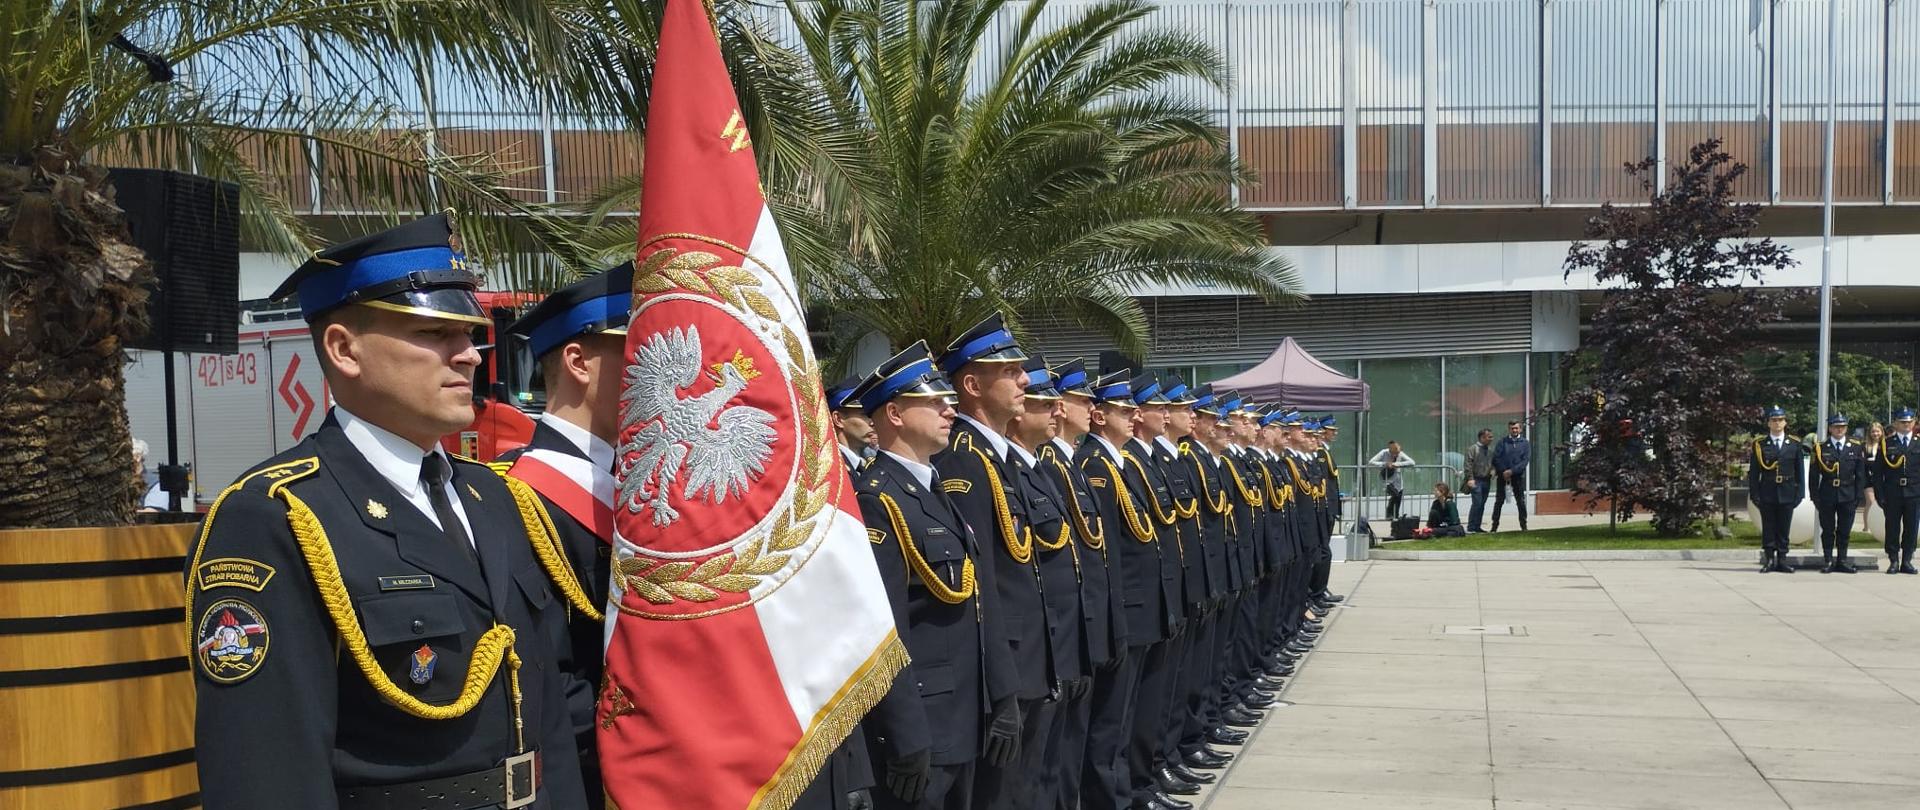 Zdjęcie przedstawia Kompanie honorową strażaków z Chorzowa wraz z pocztem sztandarowym